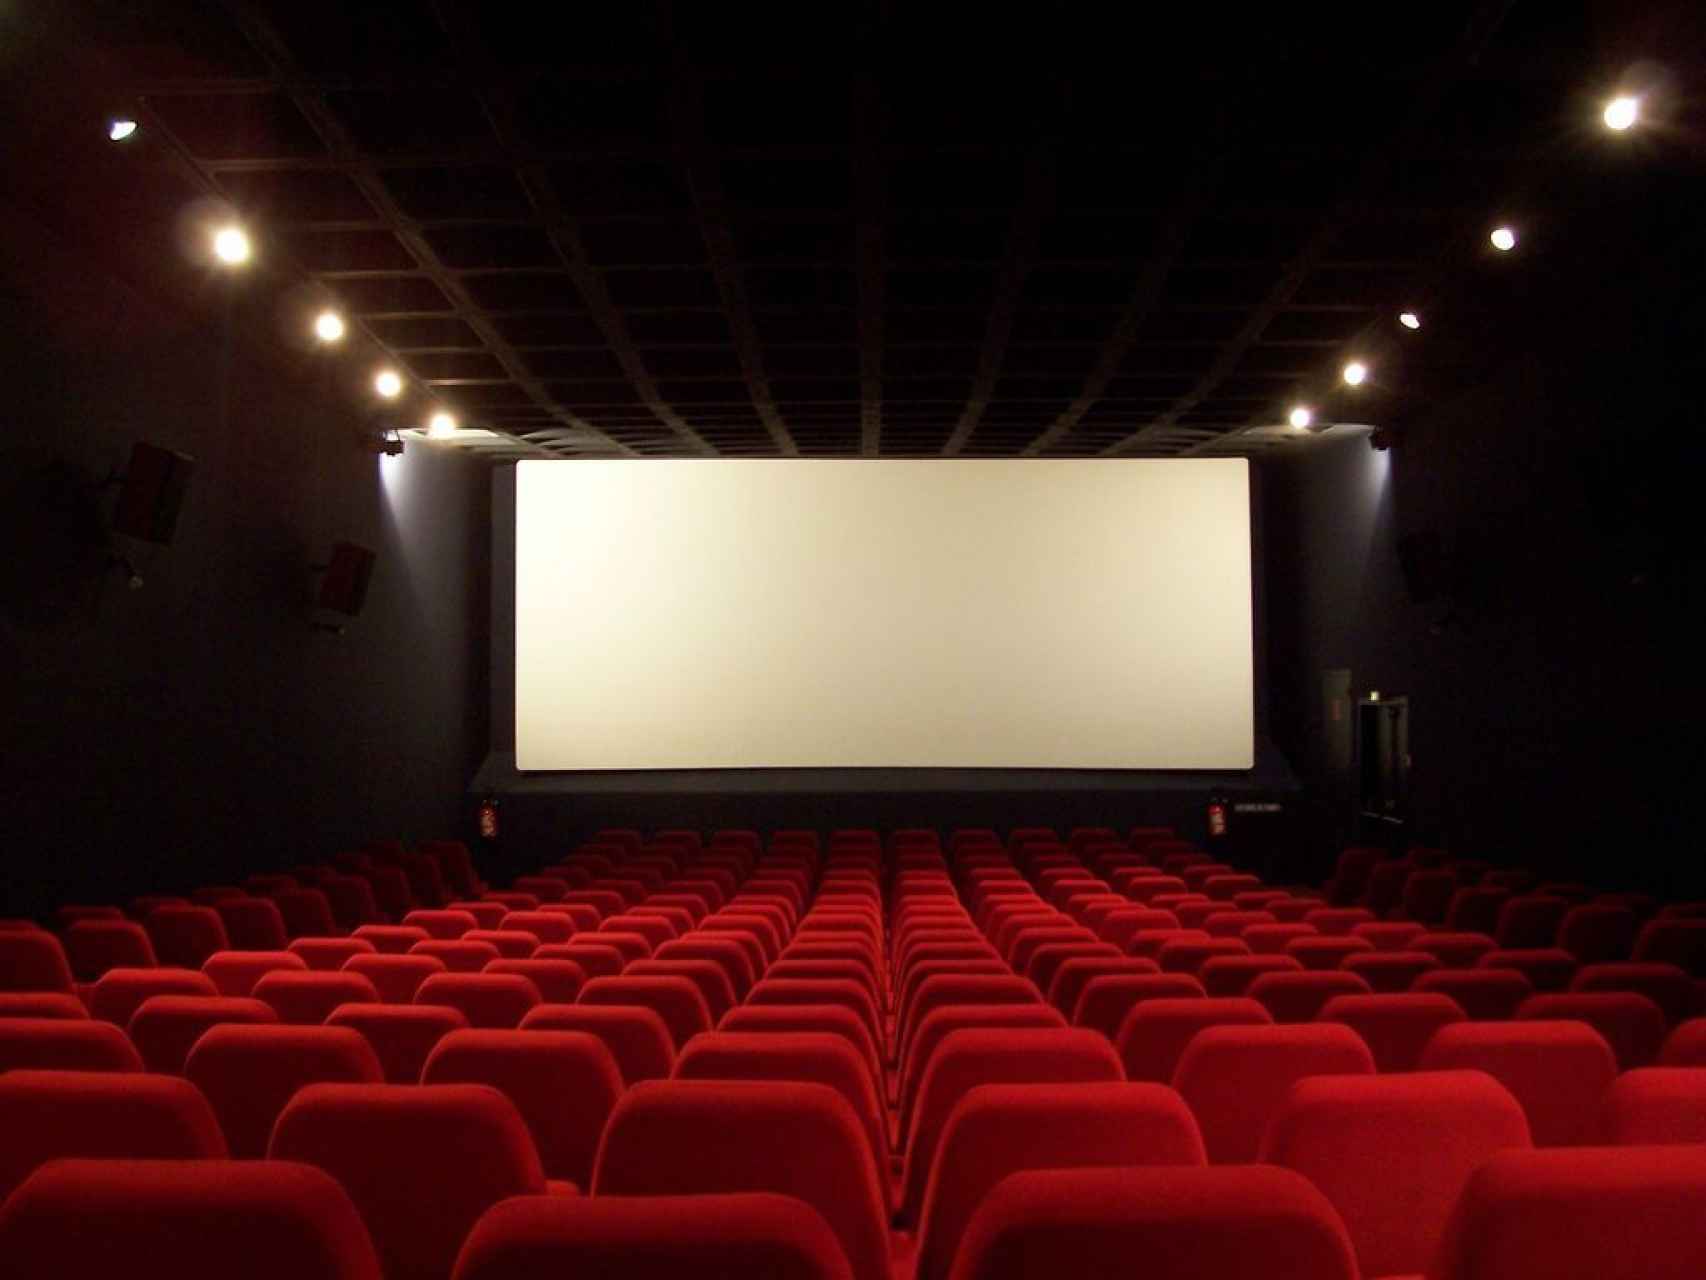 Las salas de cine se enfrentan al reto de la tarifa plana para atraer espectadores.